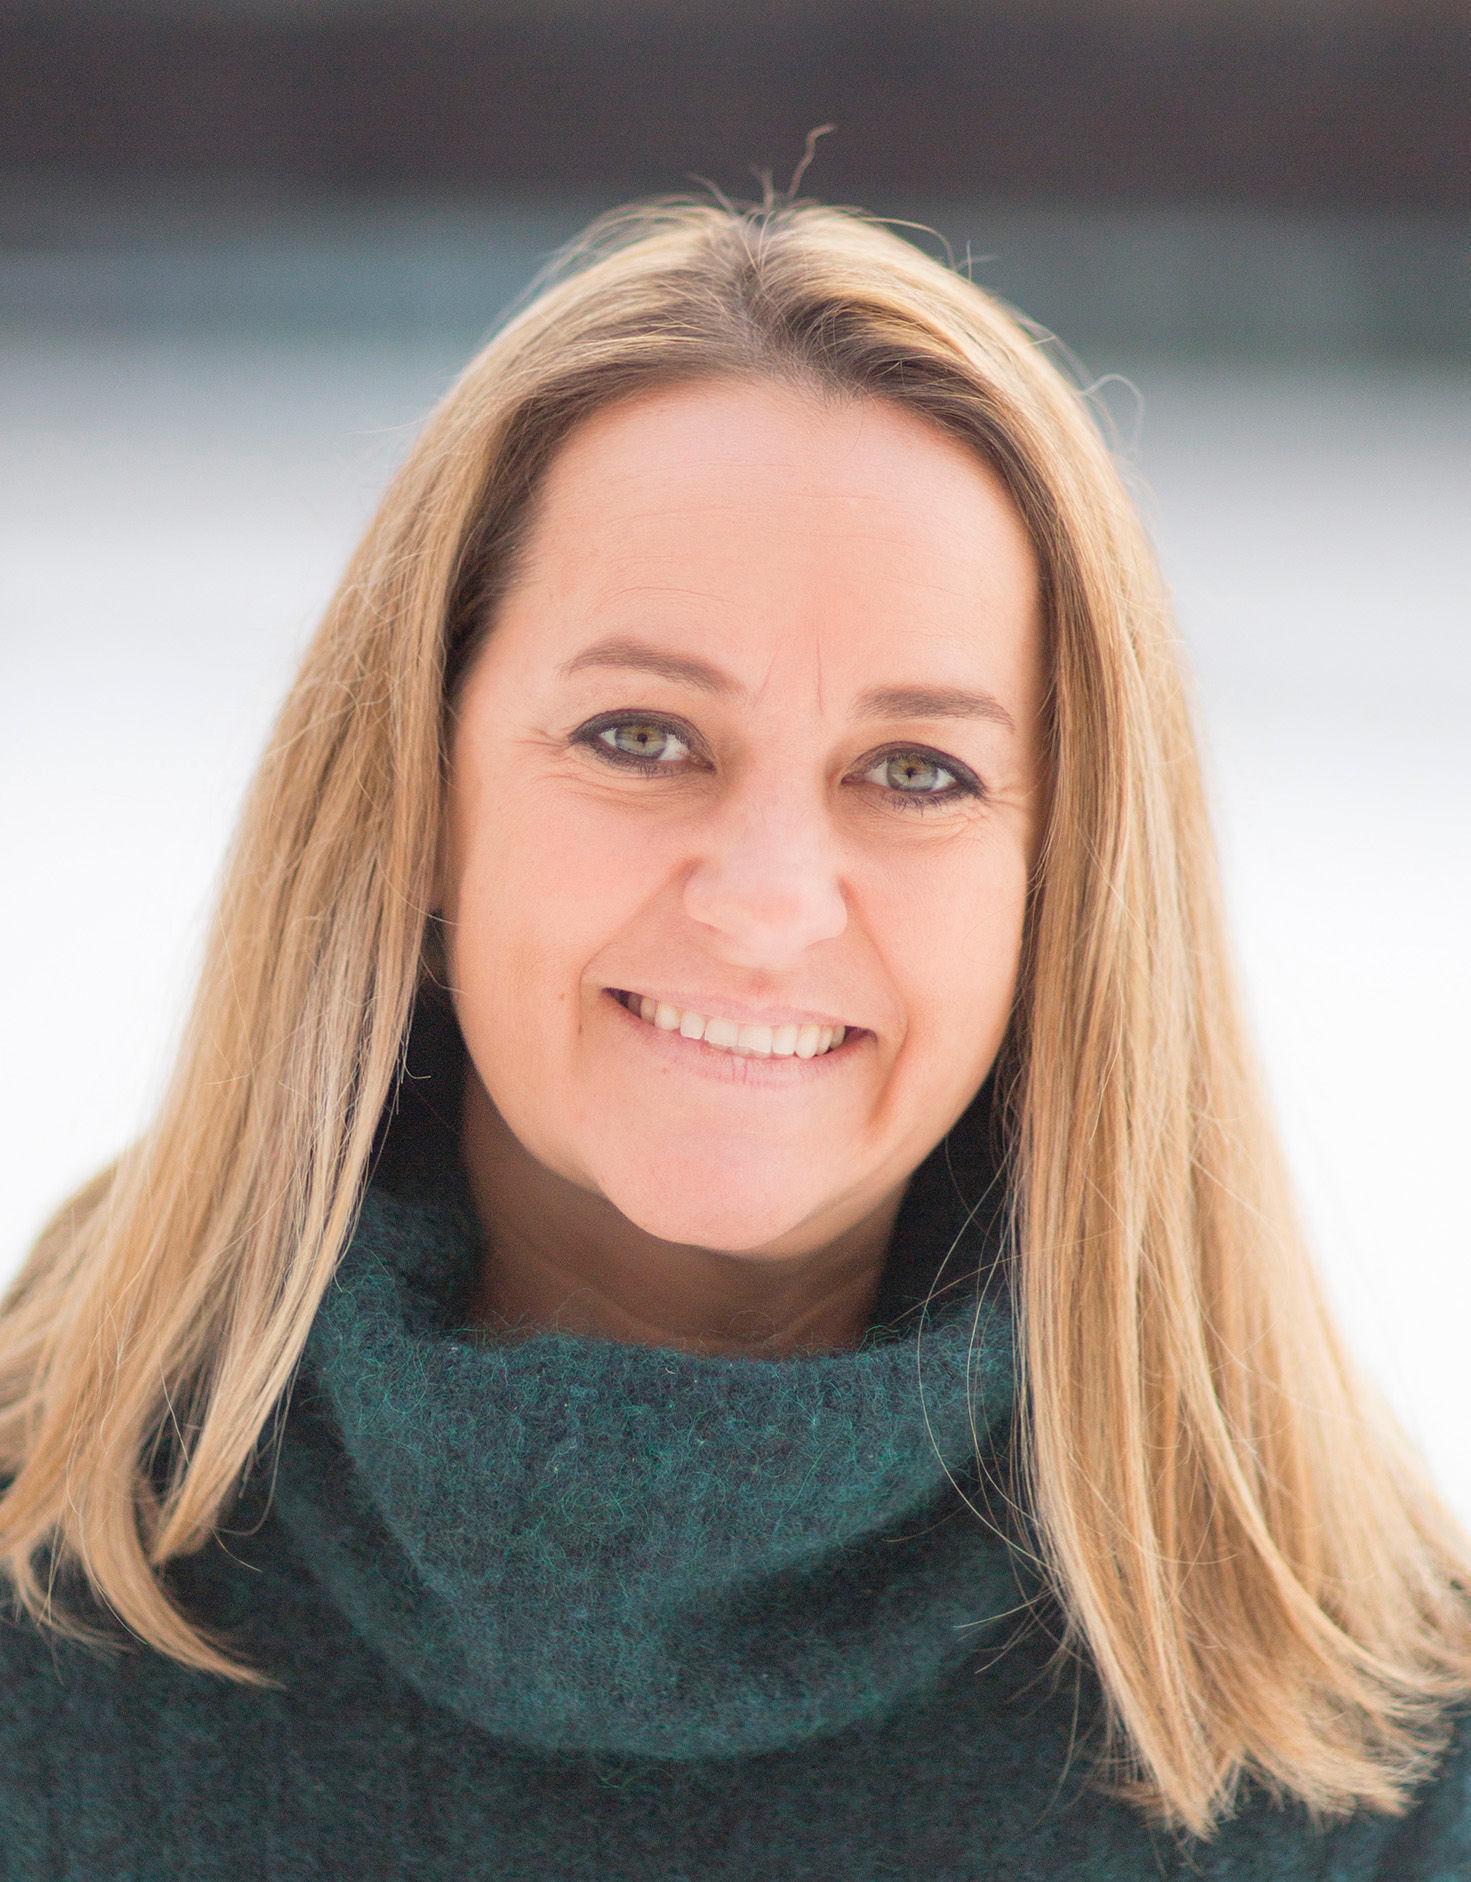 SKAFTET OPP: Kristine Maudal er kommunikasjonssjef hos Bosch. Hun foretrekker å sette skaftet på bestikket opp i oppvaskmaskinen. Foto: BSH Husholdningsapparater AS